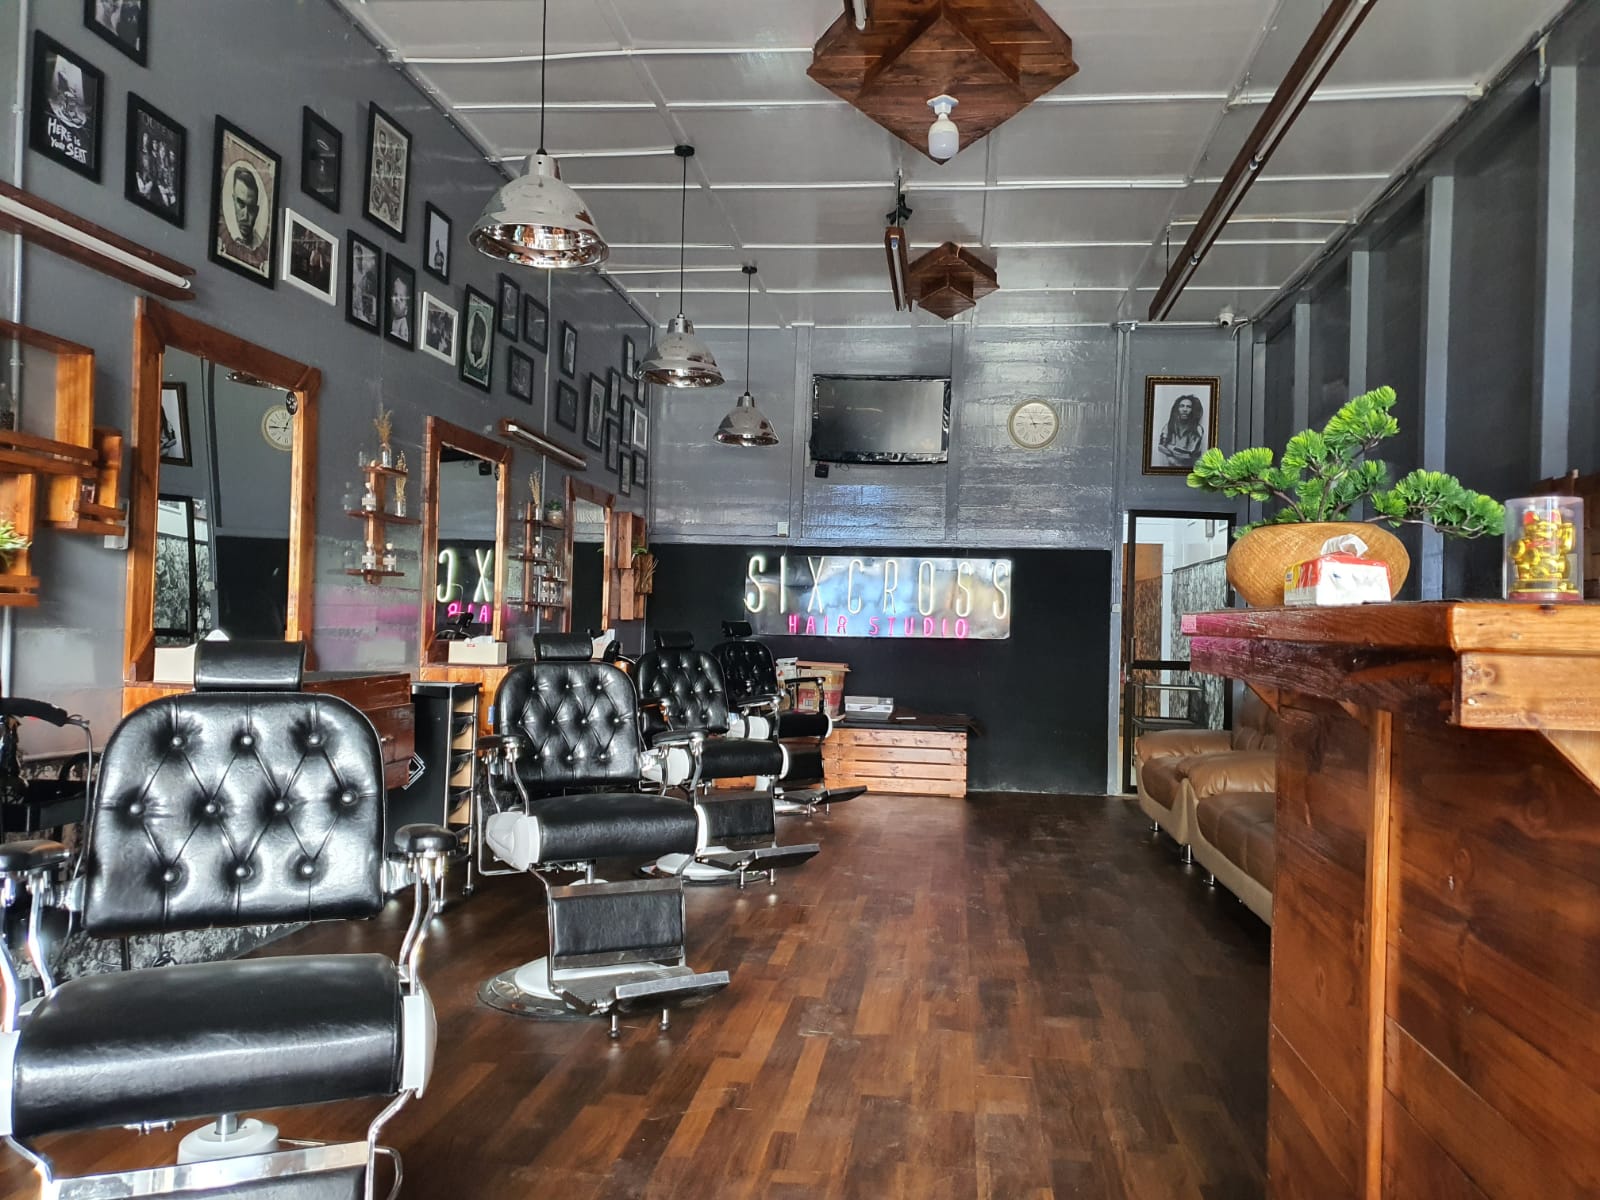 Hadir di Kota Kabanjahe, Hair Studio Sixcross Siap Manjakan Pelanggan Menemukan Kesegaran Sensasional